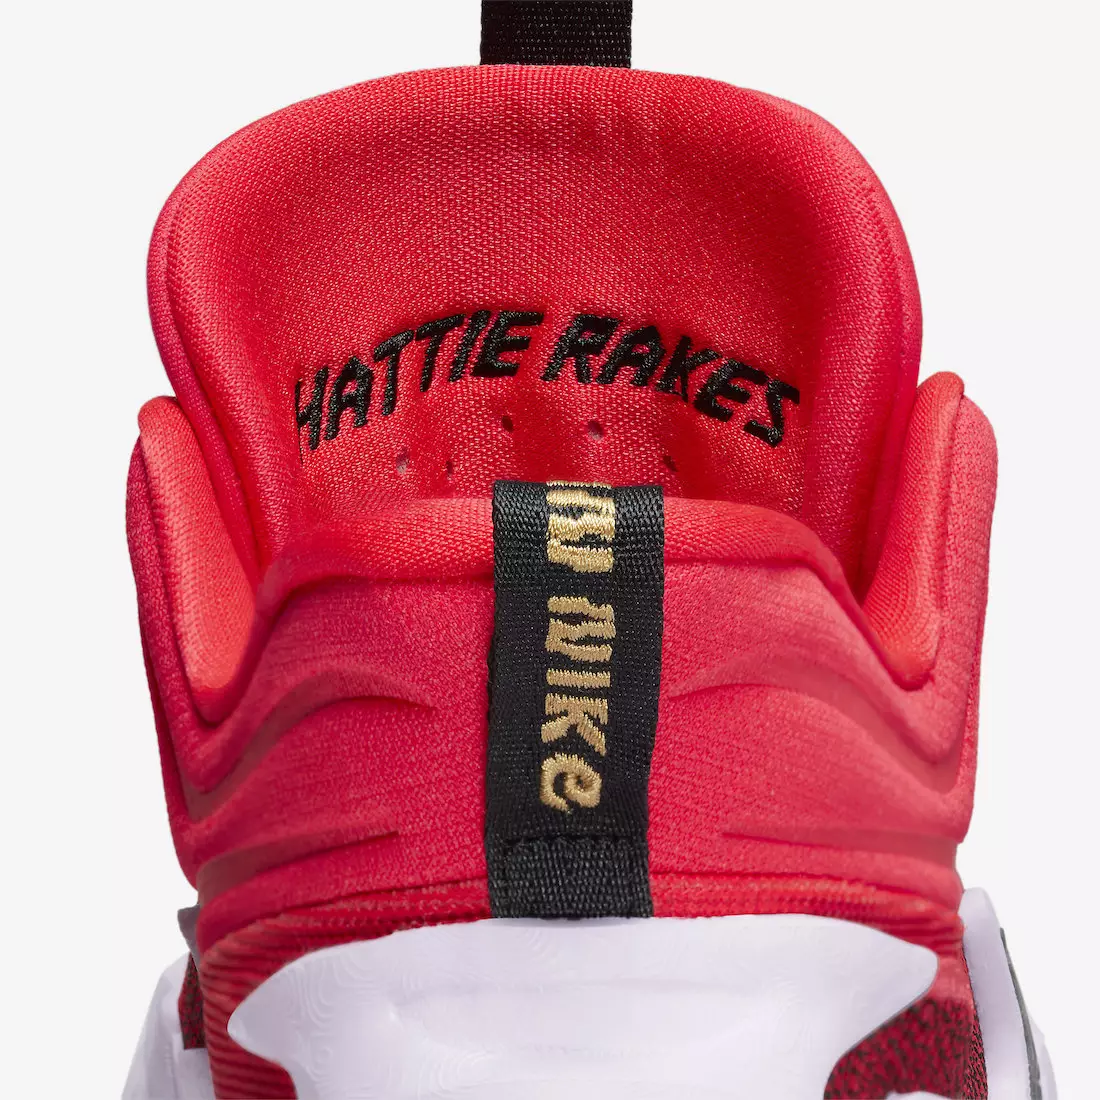 Nike Cosmic Unity 2 Hattie Rakes Siren Red DH1537-601 Megjelenés dátuma